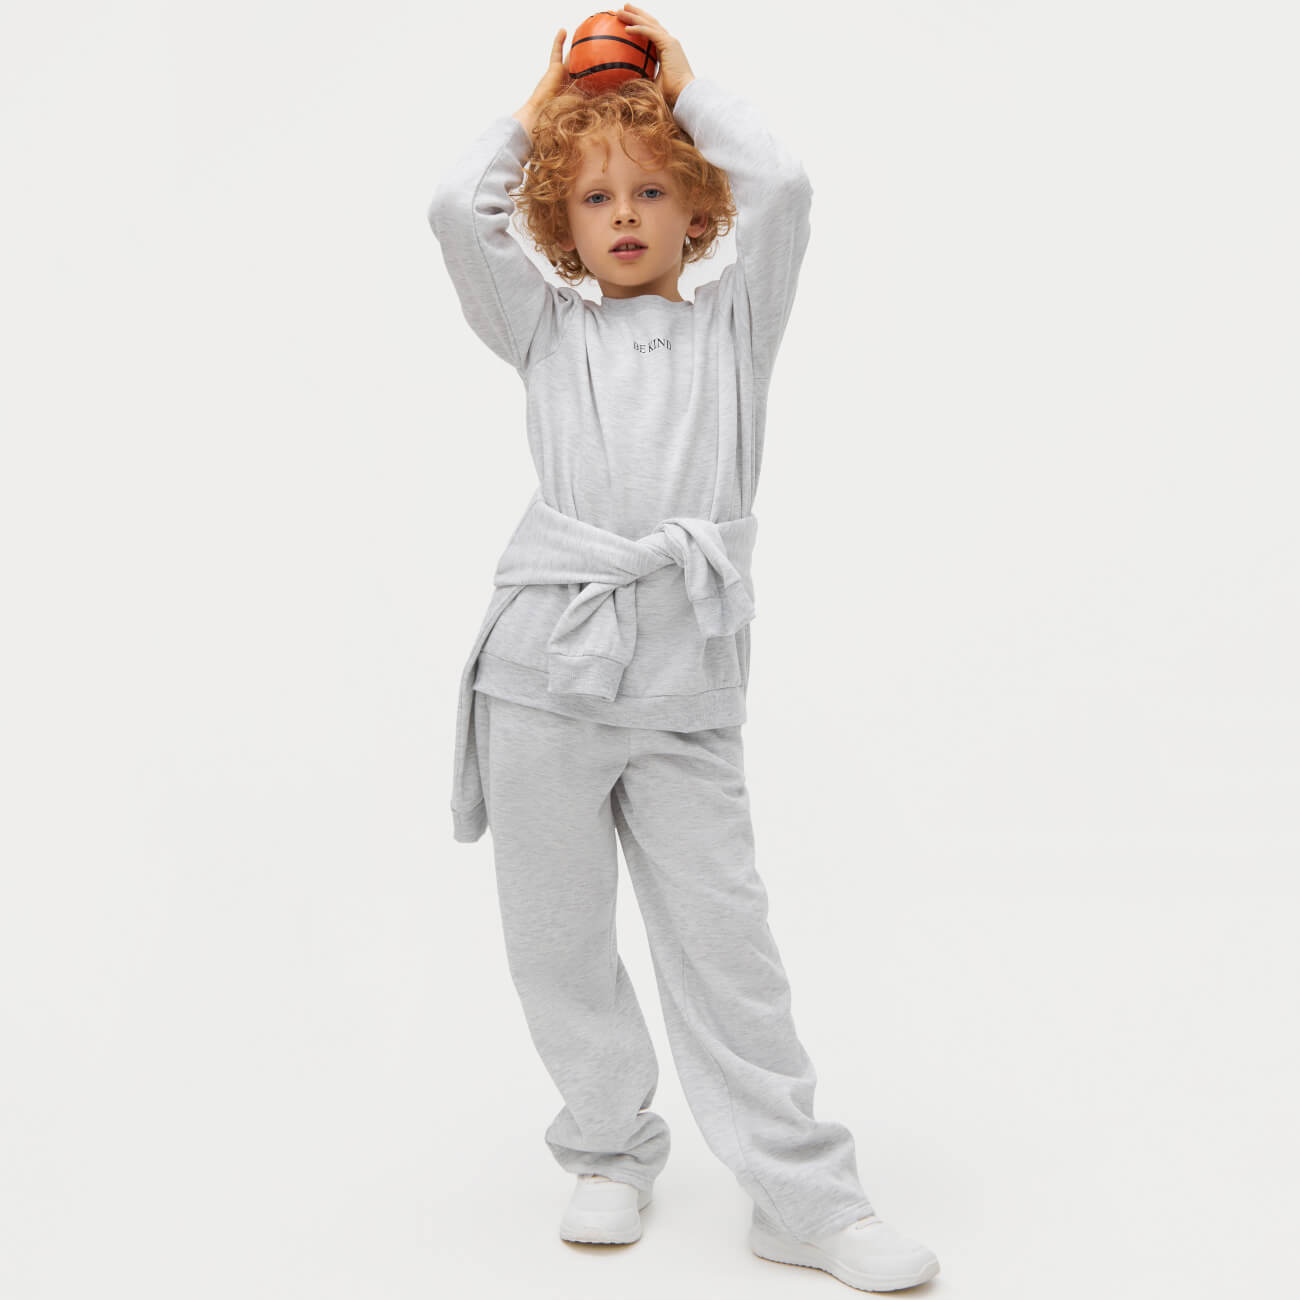 Брюки детские, 140 см, широкие, полиэстер/вискоза, светло-серые, Jodie полуширокие брюки yale small arch logo серые